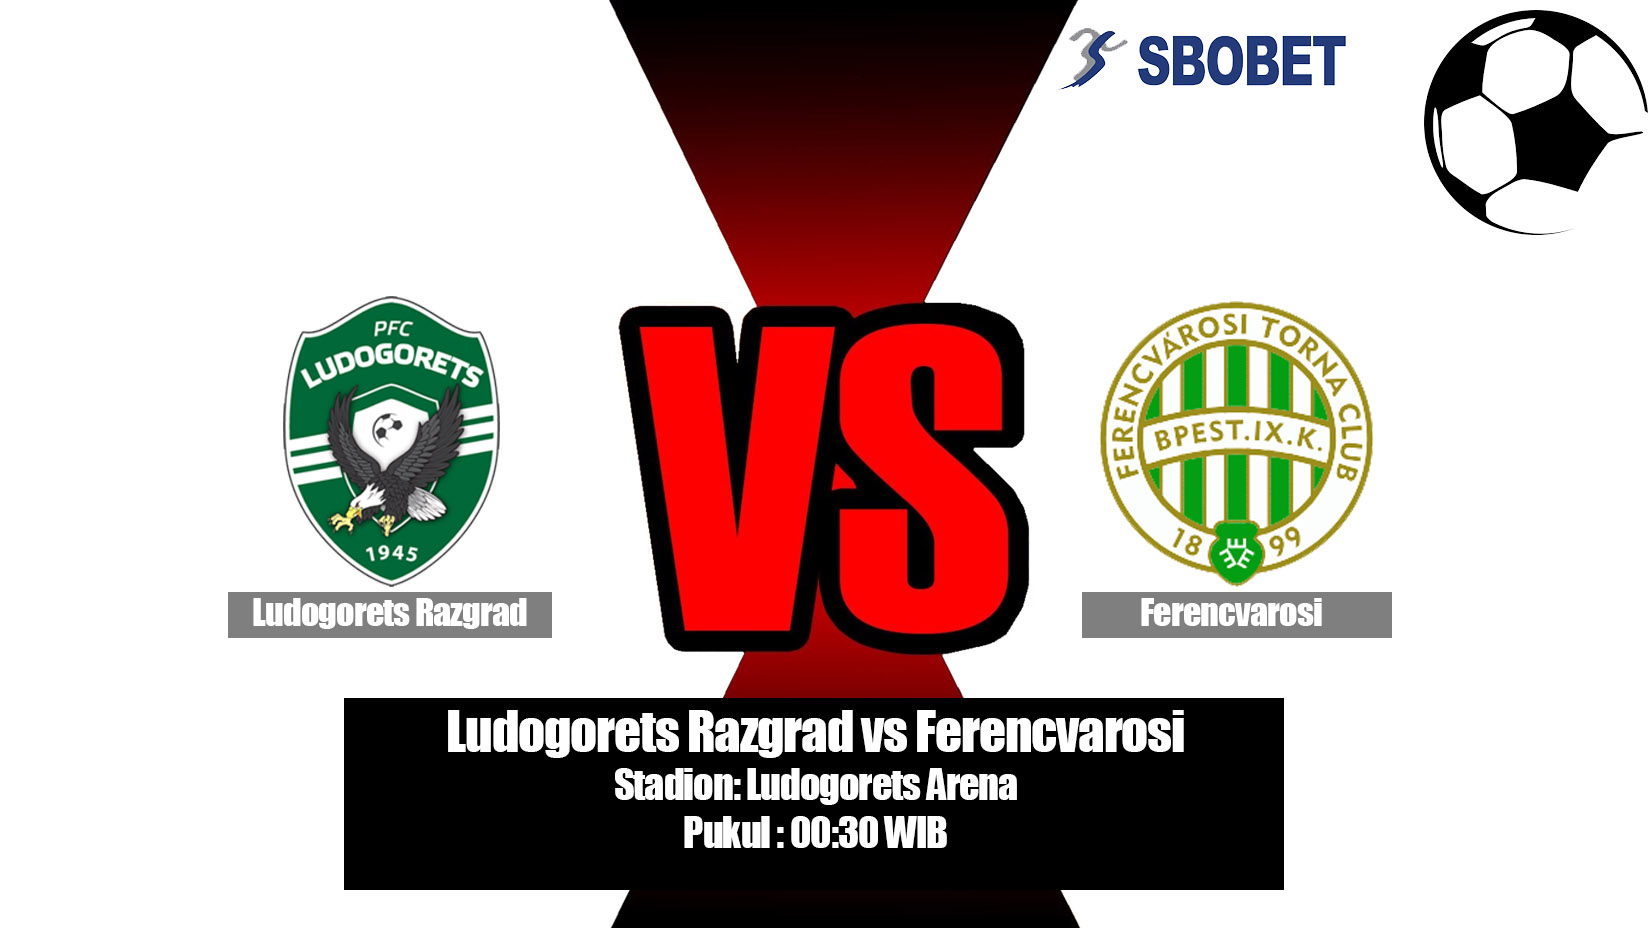 Prediksi Bola Ludogorets Razgrad vs Ferencvarosi 18 Juli 2019.jpg